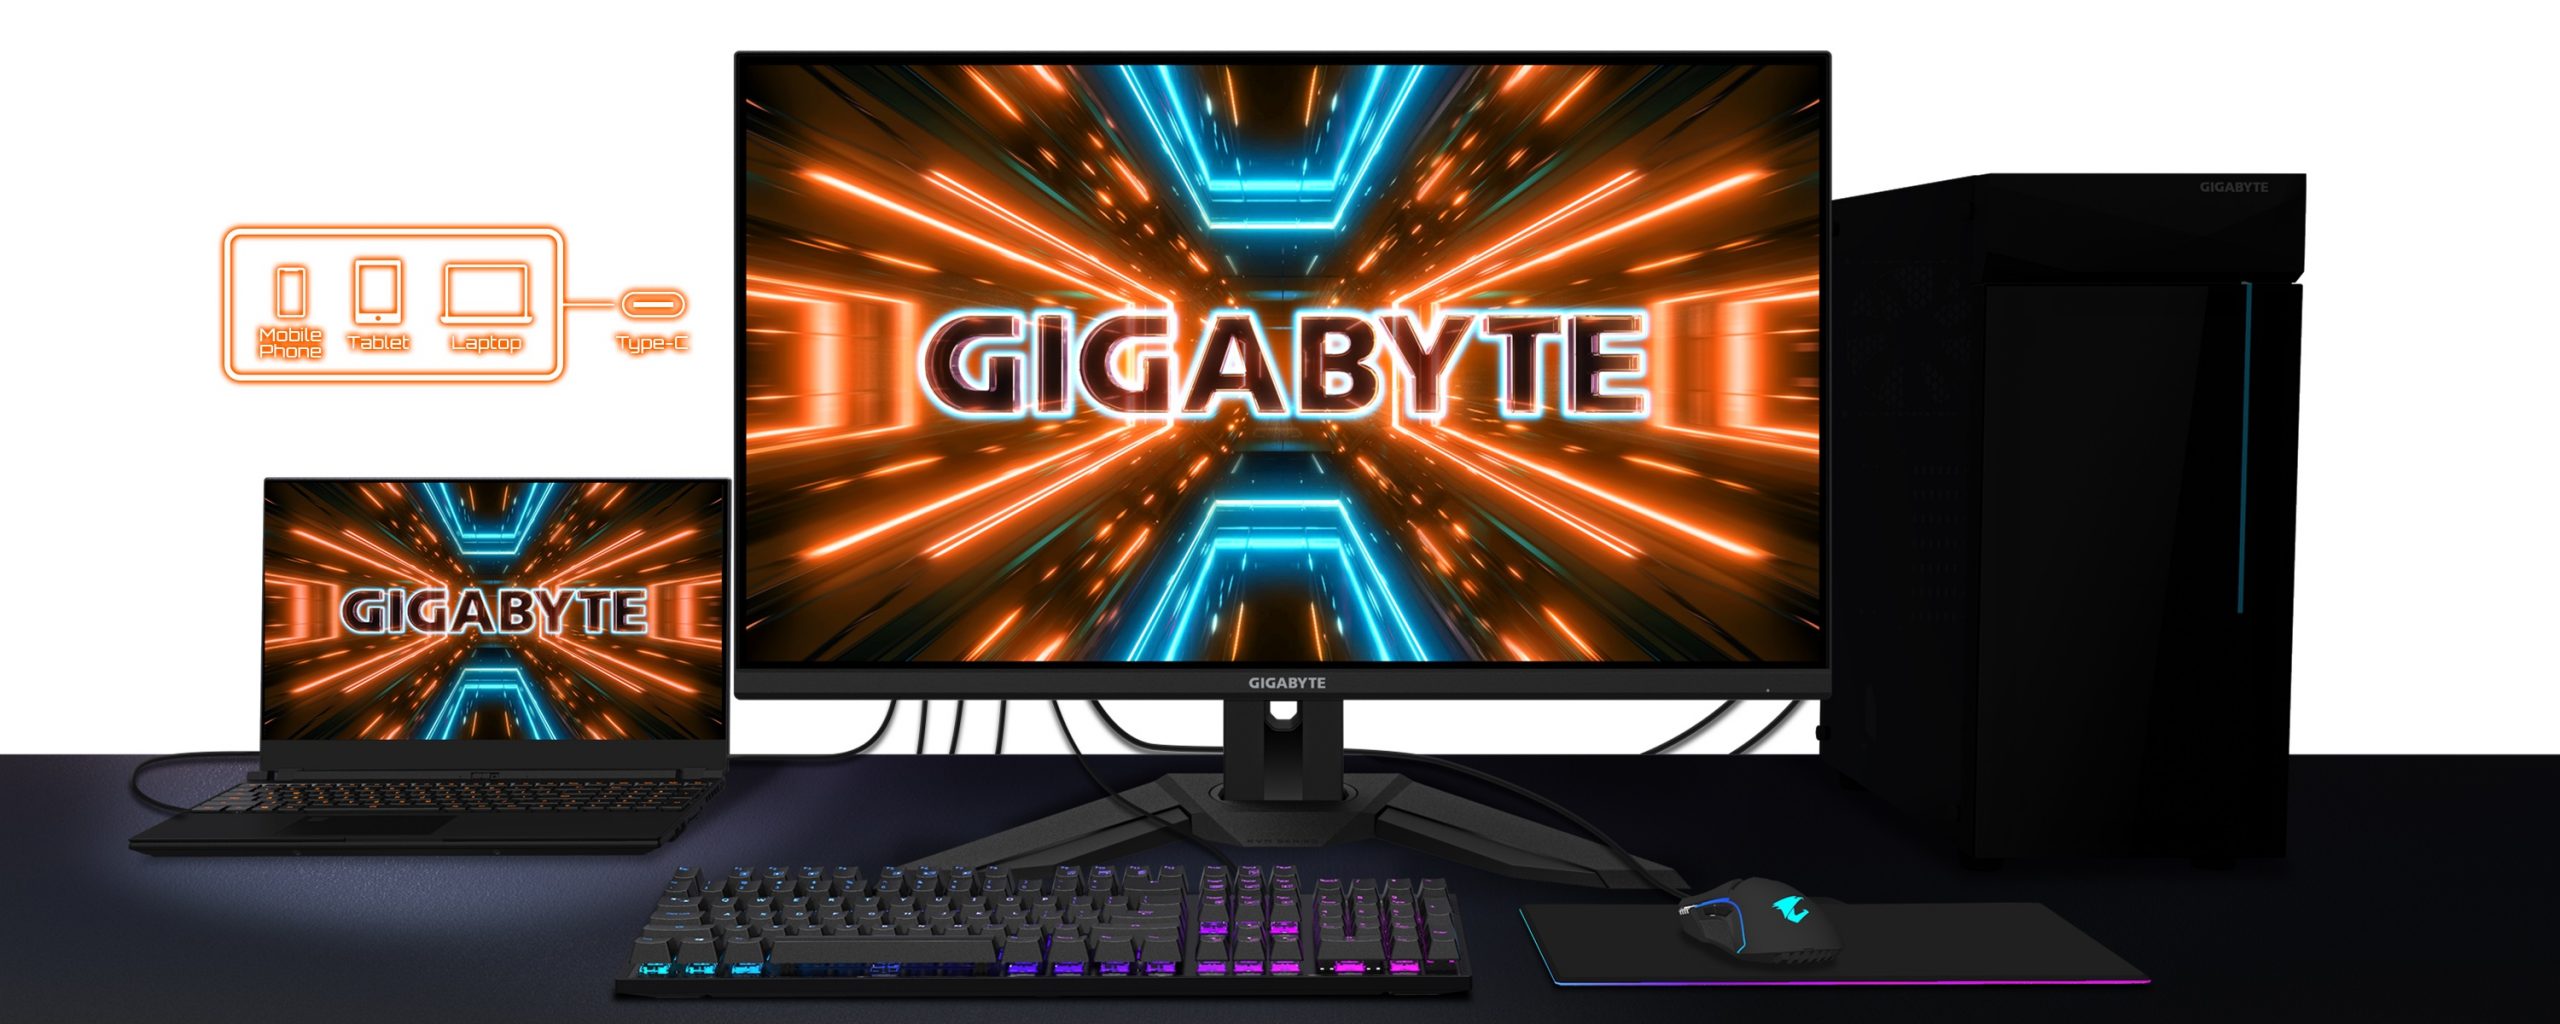 GIGABYTE ra mắt màn hình gaming M32Q, màn hình to hơn – làm việc và giải trí tuyệt hơn!